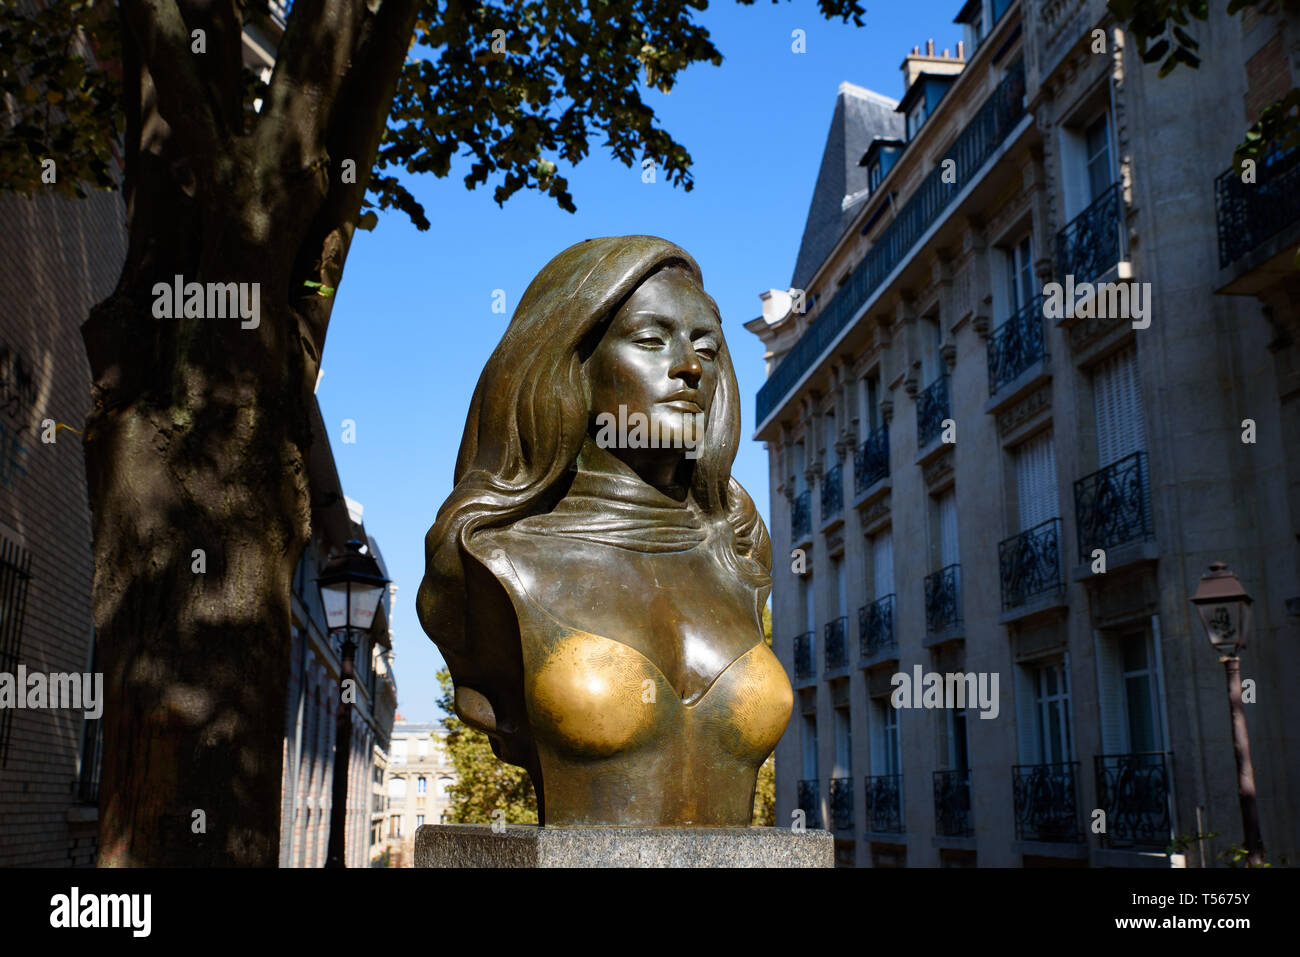 Statua di Dalida, un cantante francese e attrice, a Montmartre, Francia Foto Stock